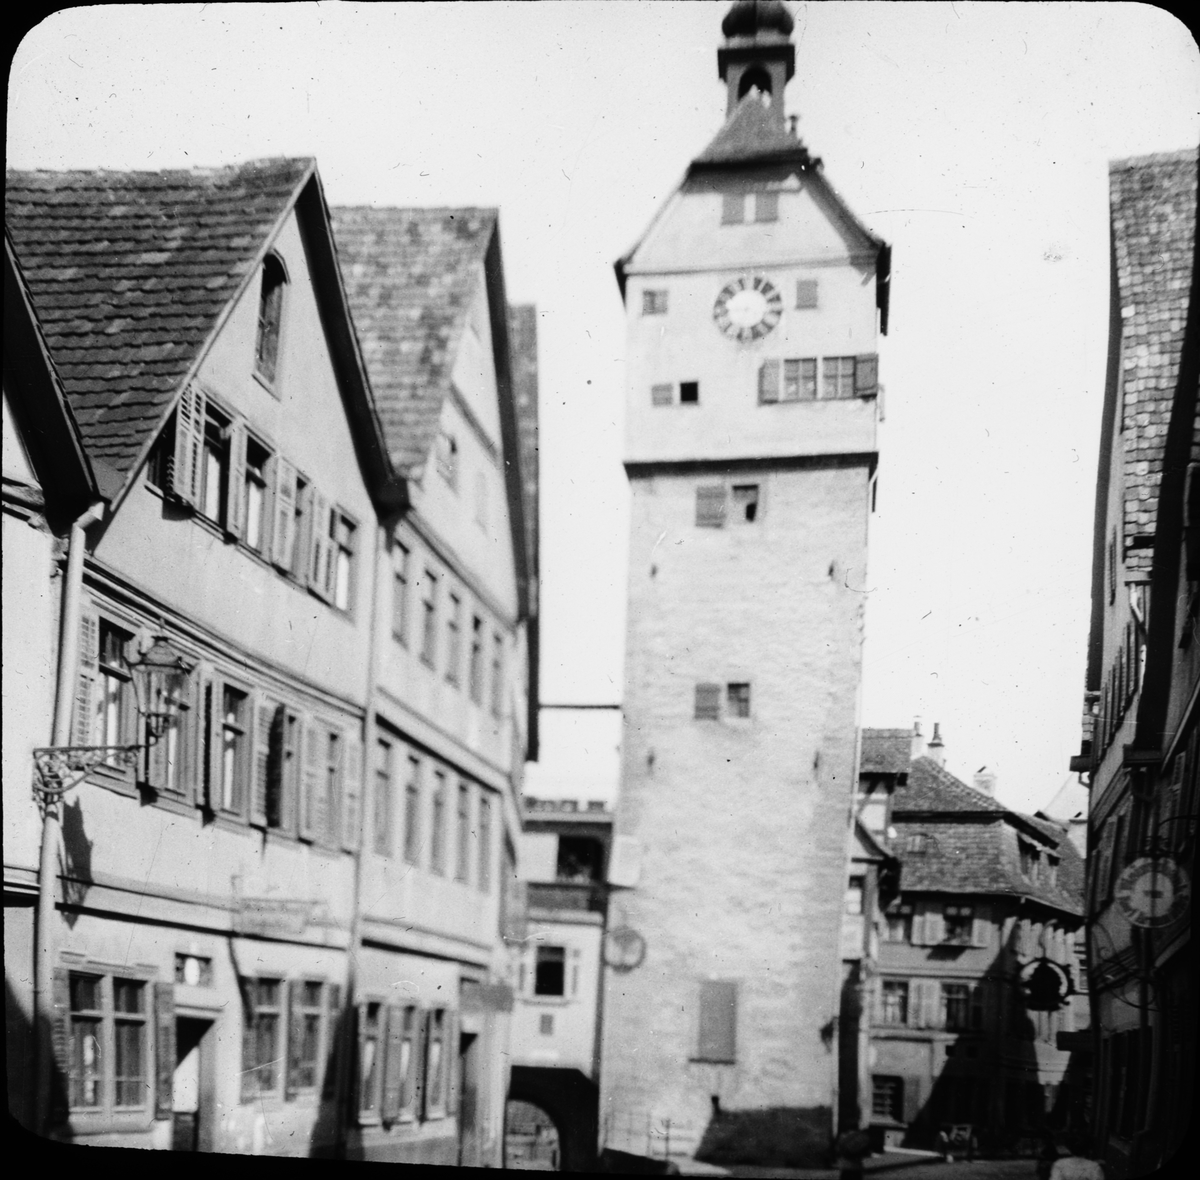 Skioptikonbild med motiv av Josenturm, Schwäbisch Hall.
Bilden har förvarats i kartong märkt: Resan 1911. Schwäbisch Hall 9. XV. Text på bild: "Josenturm".